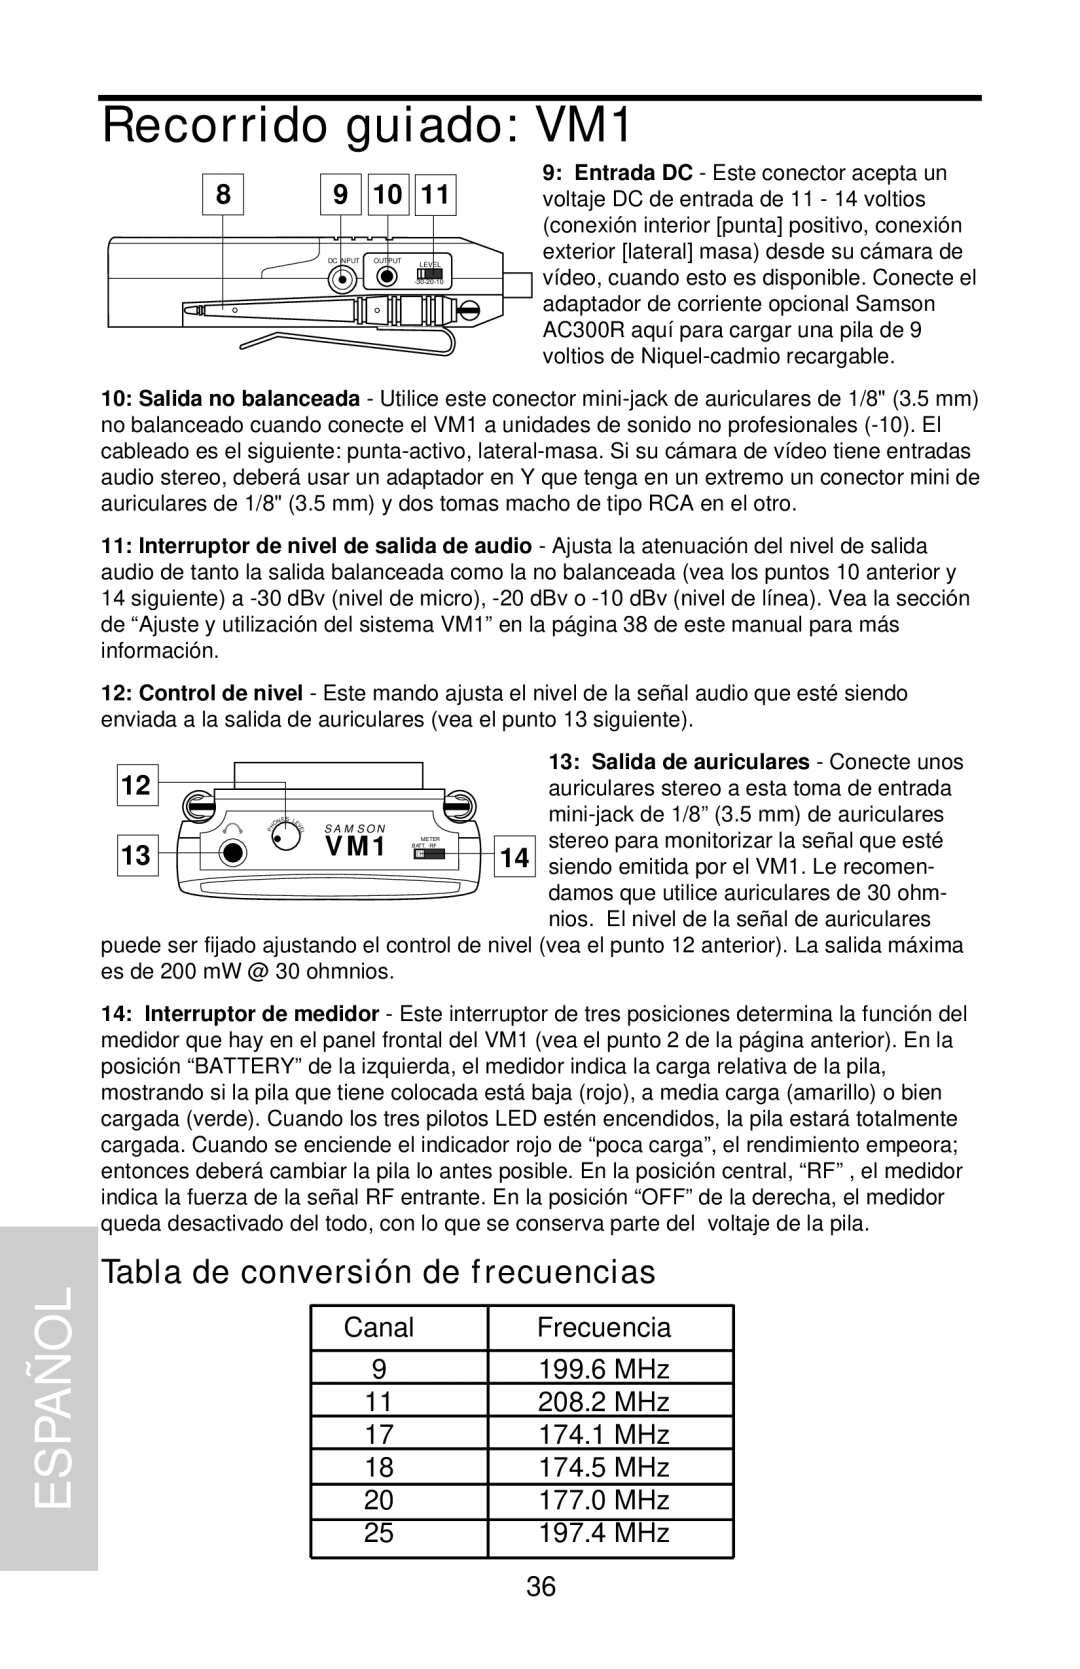 Samson VHF Micro TRUE DIVERSITY WIRELESS owner manual Recorrido guiado: VM1, Españ, Tabla de conversión de frecuencias 